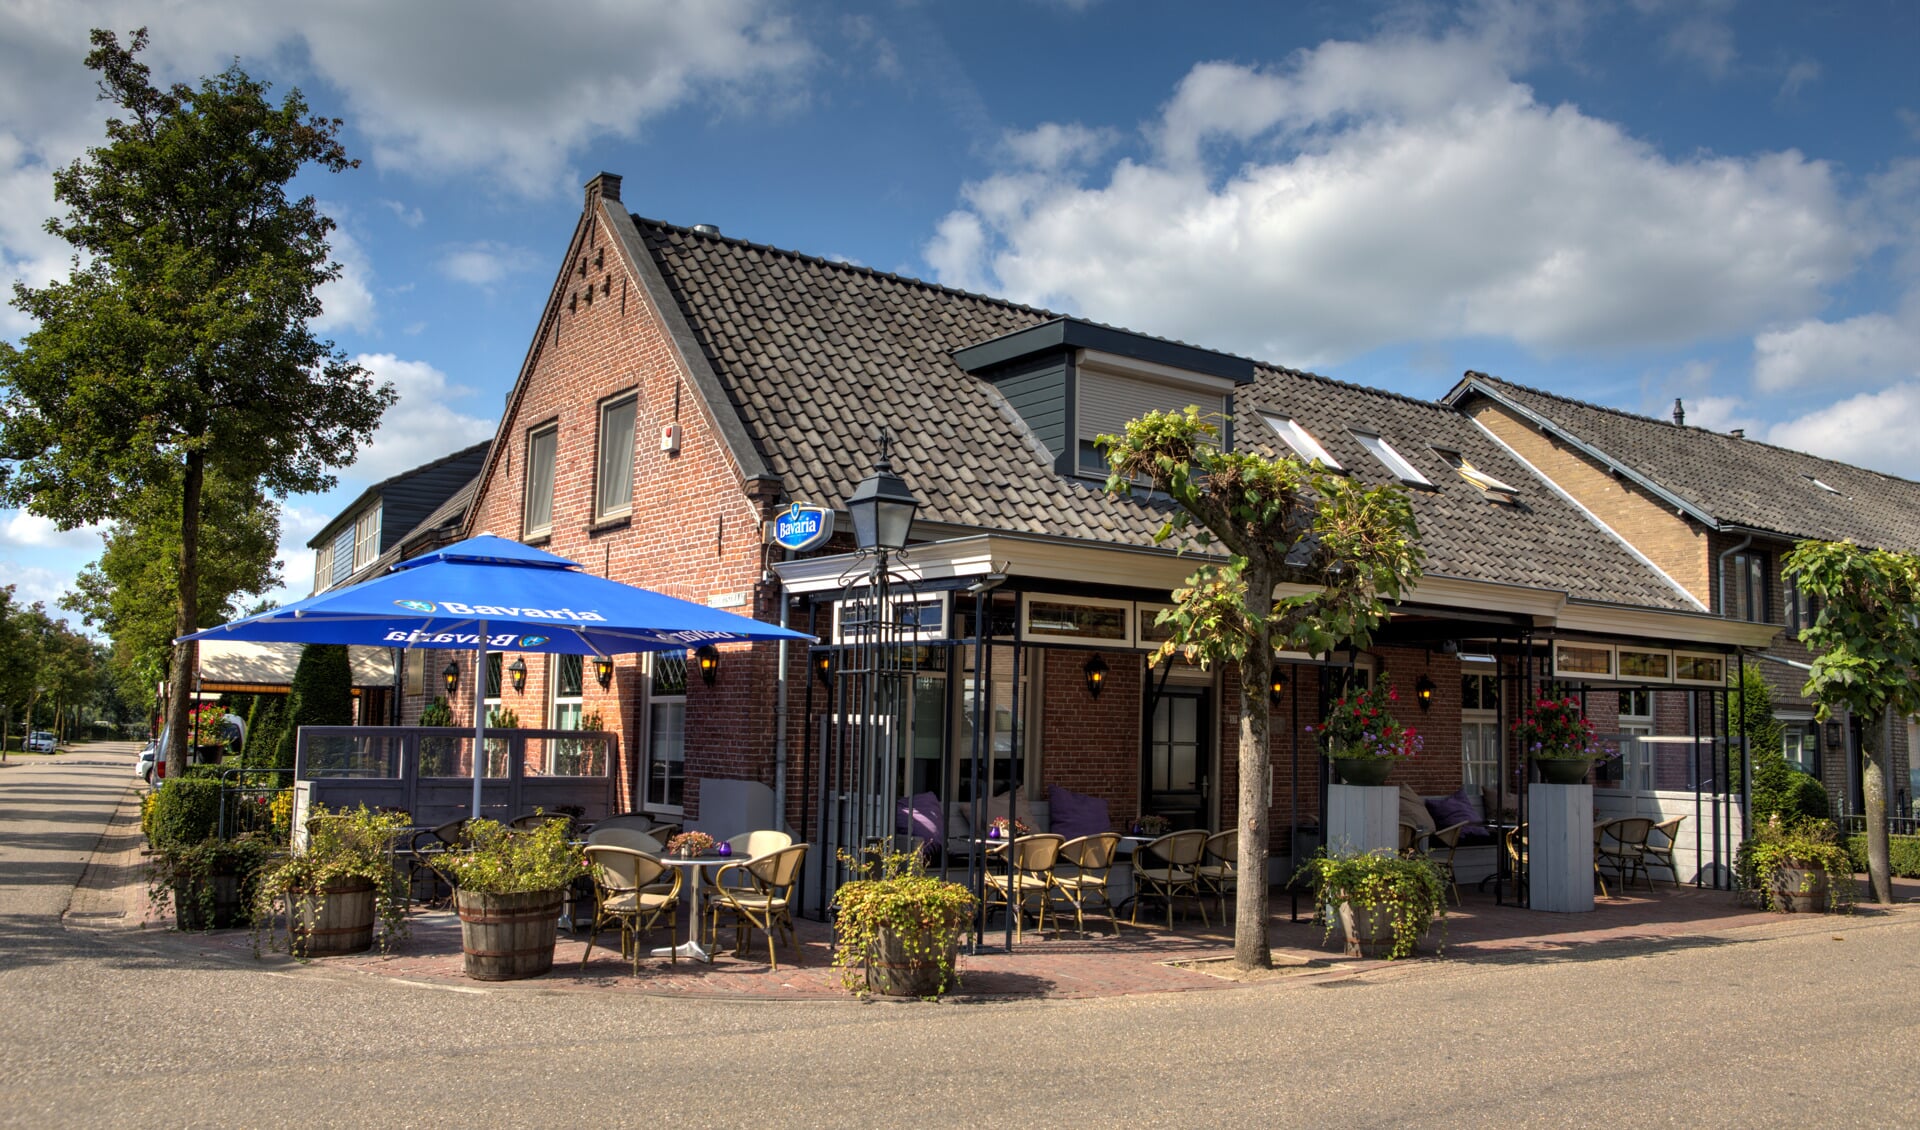 Café Zaal Kleijngeld in Zijtaart is door de Coronacrisis gesloten. Er kan wel friet afgehaald worden.